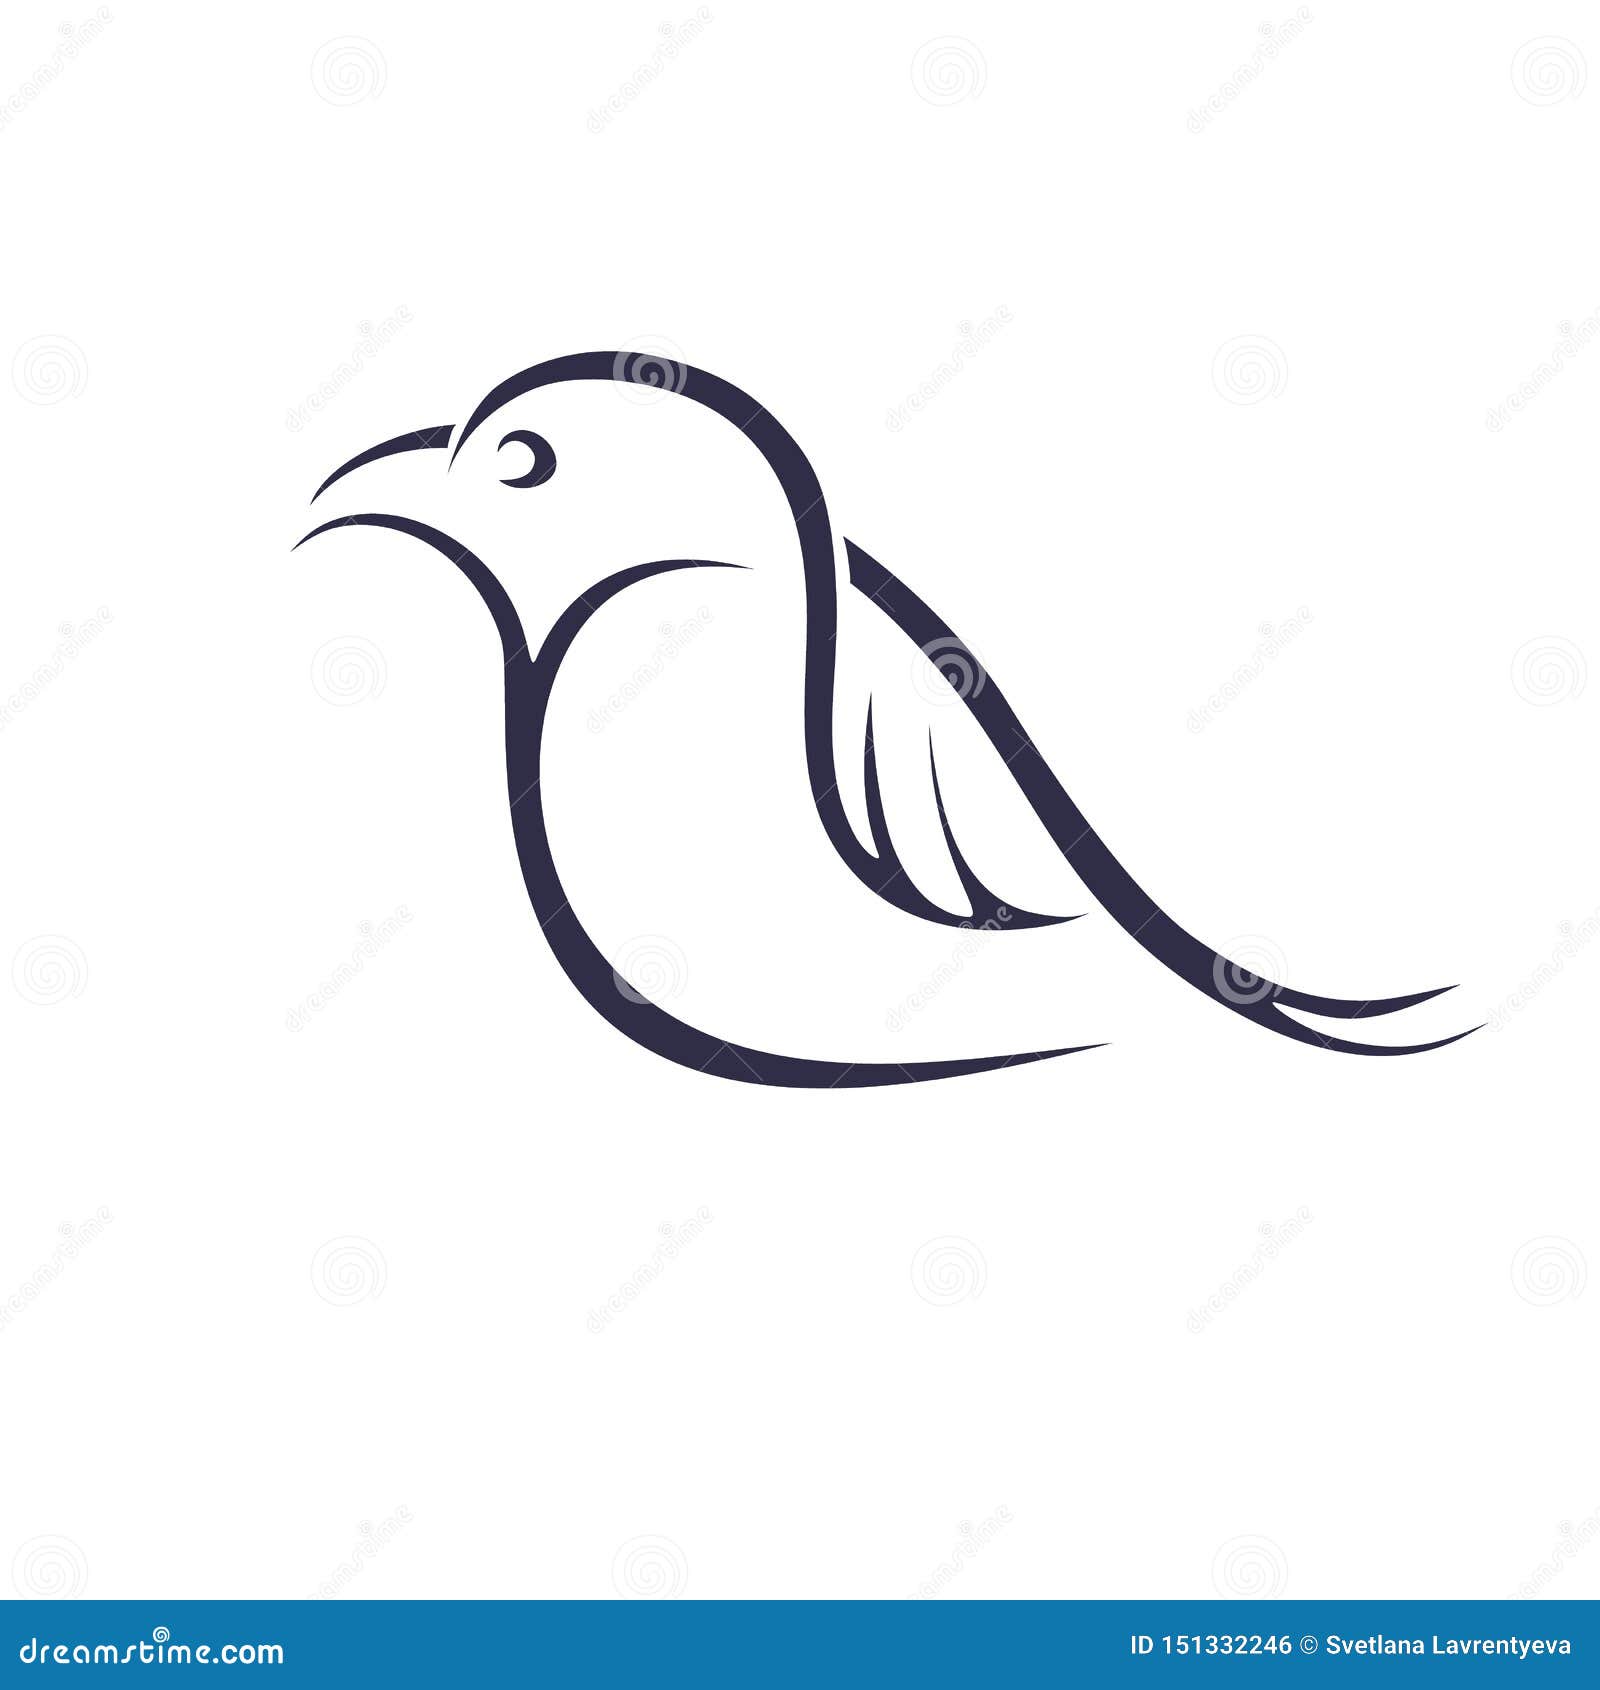 40 Lovely Birds Tattoo Designs - TutorialChip